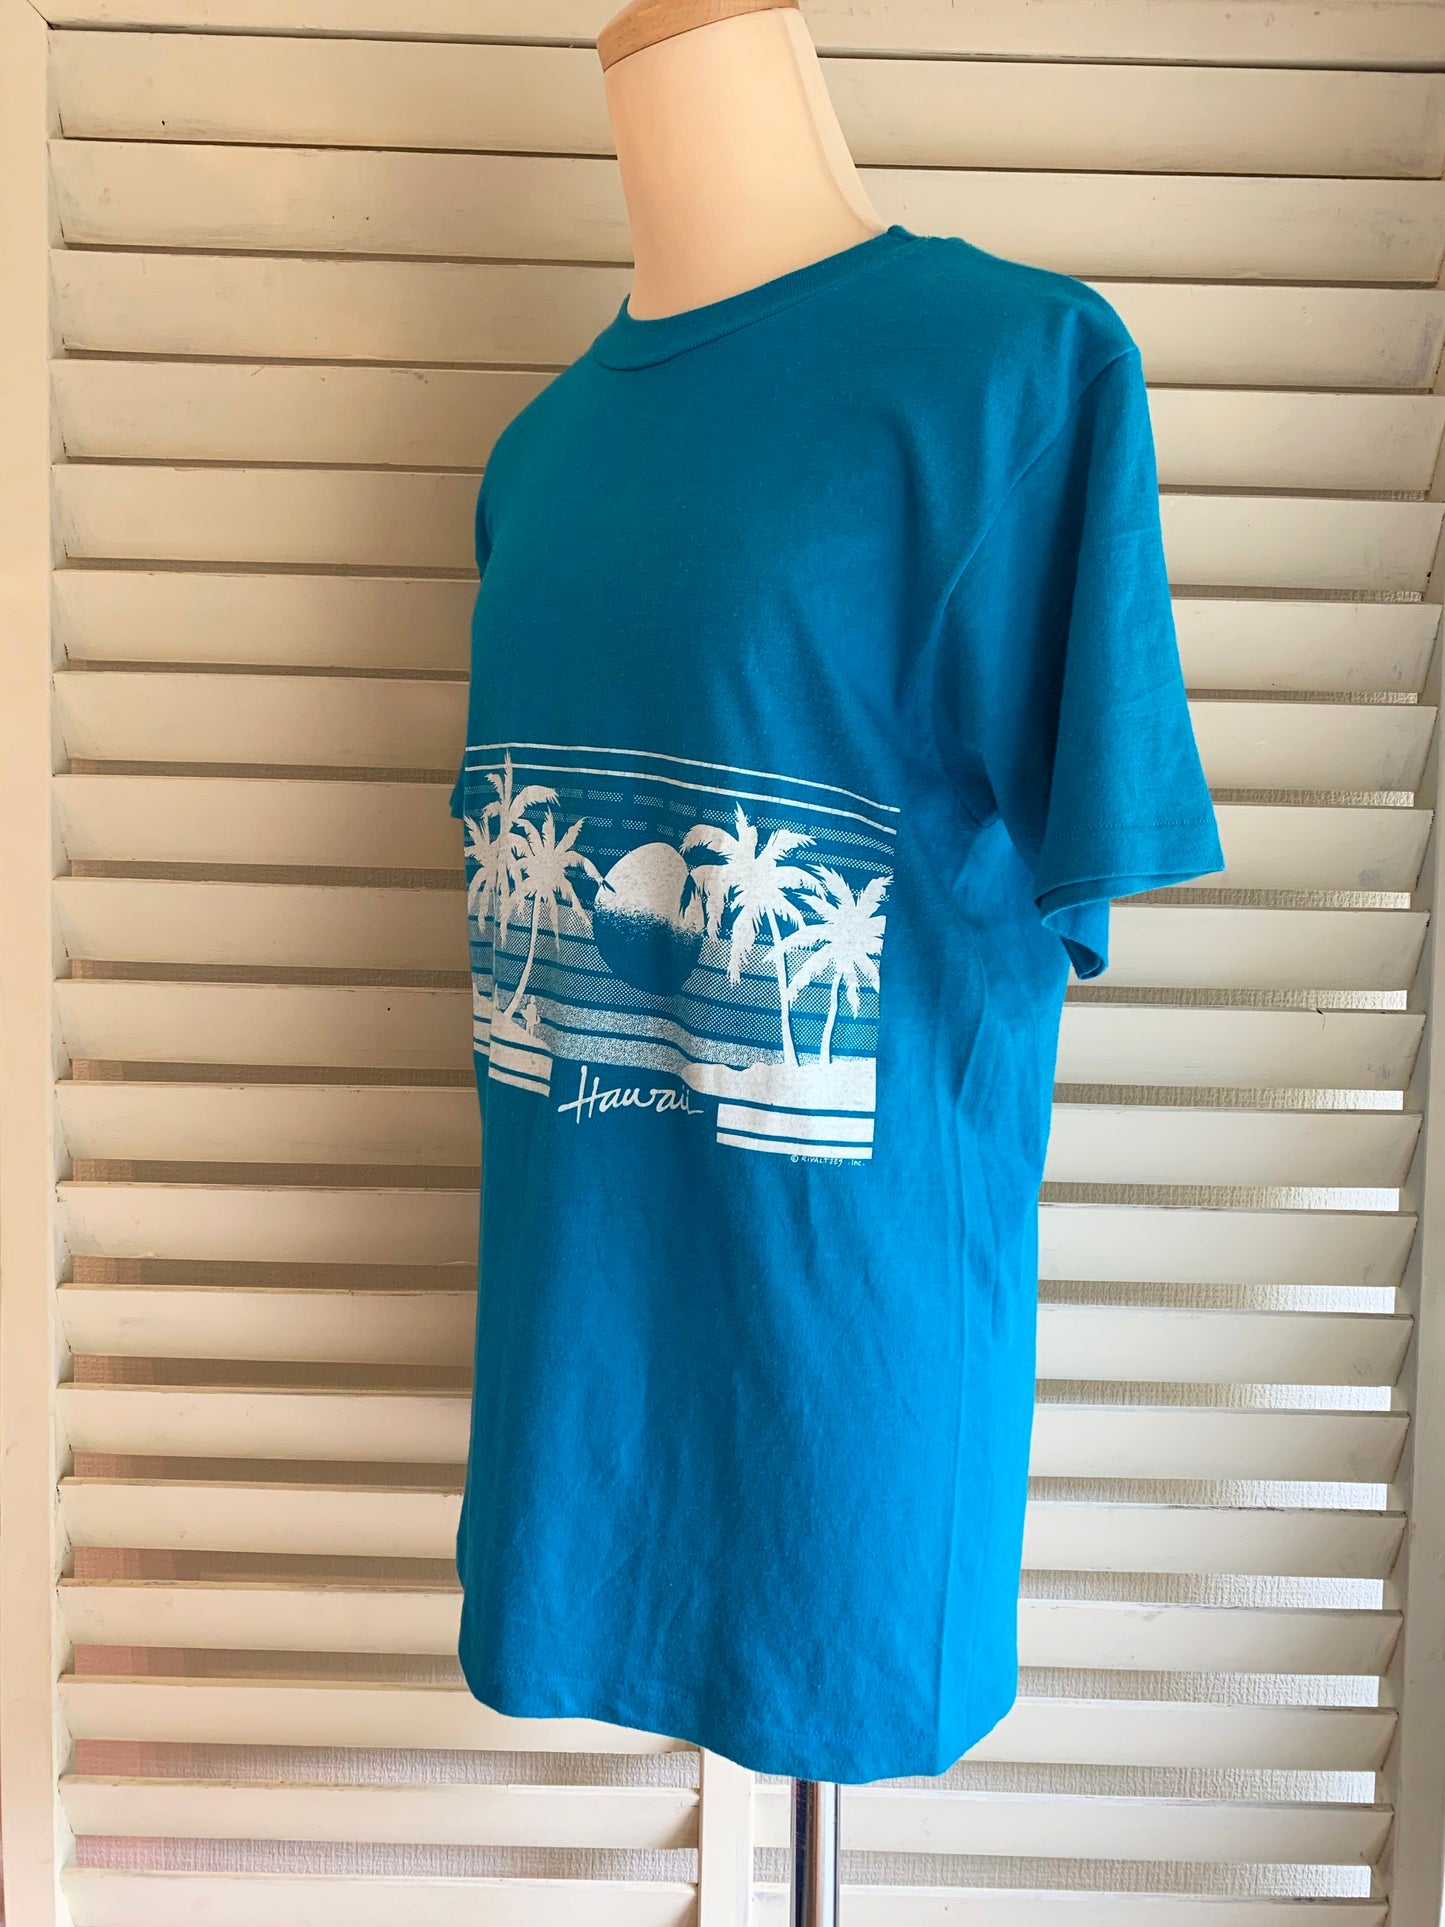 【Hanes】80s Hawaii USA製 スーベニア Tシャツ(men's M)